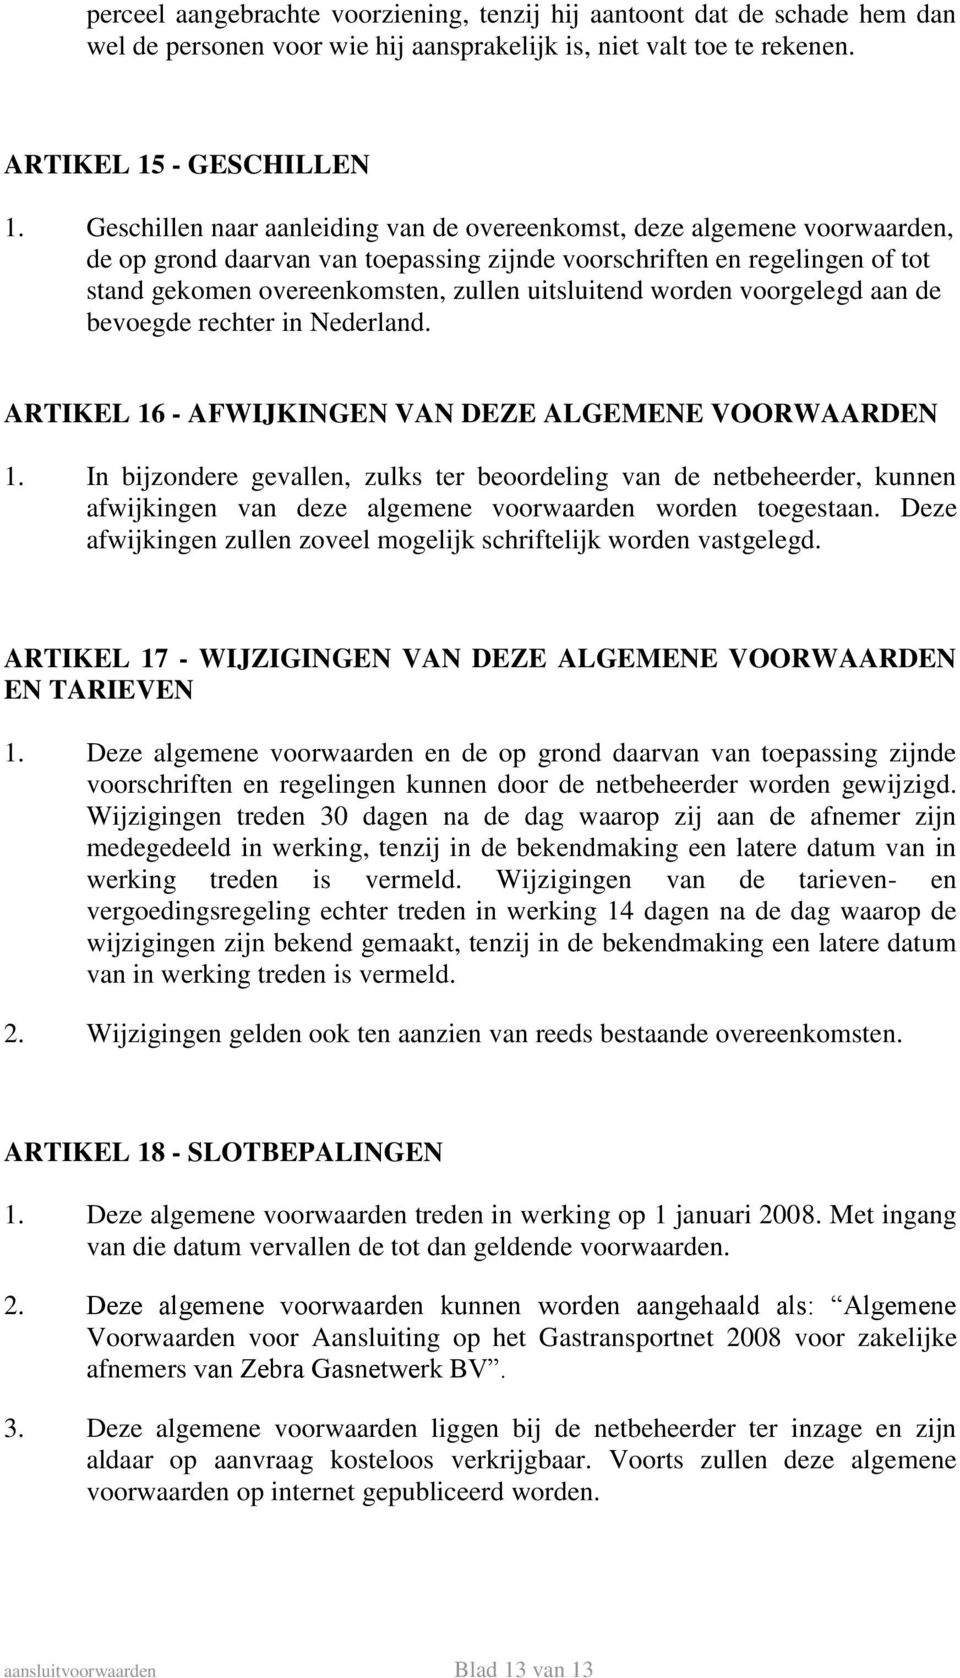 uitsluitend worden voorgelegd aan de bevoegde rechter in Nederland. ARTIKEL 16 - AFWIJKINGEN VAN DEZE ALGEMENE VOORWAARDEN 1.